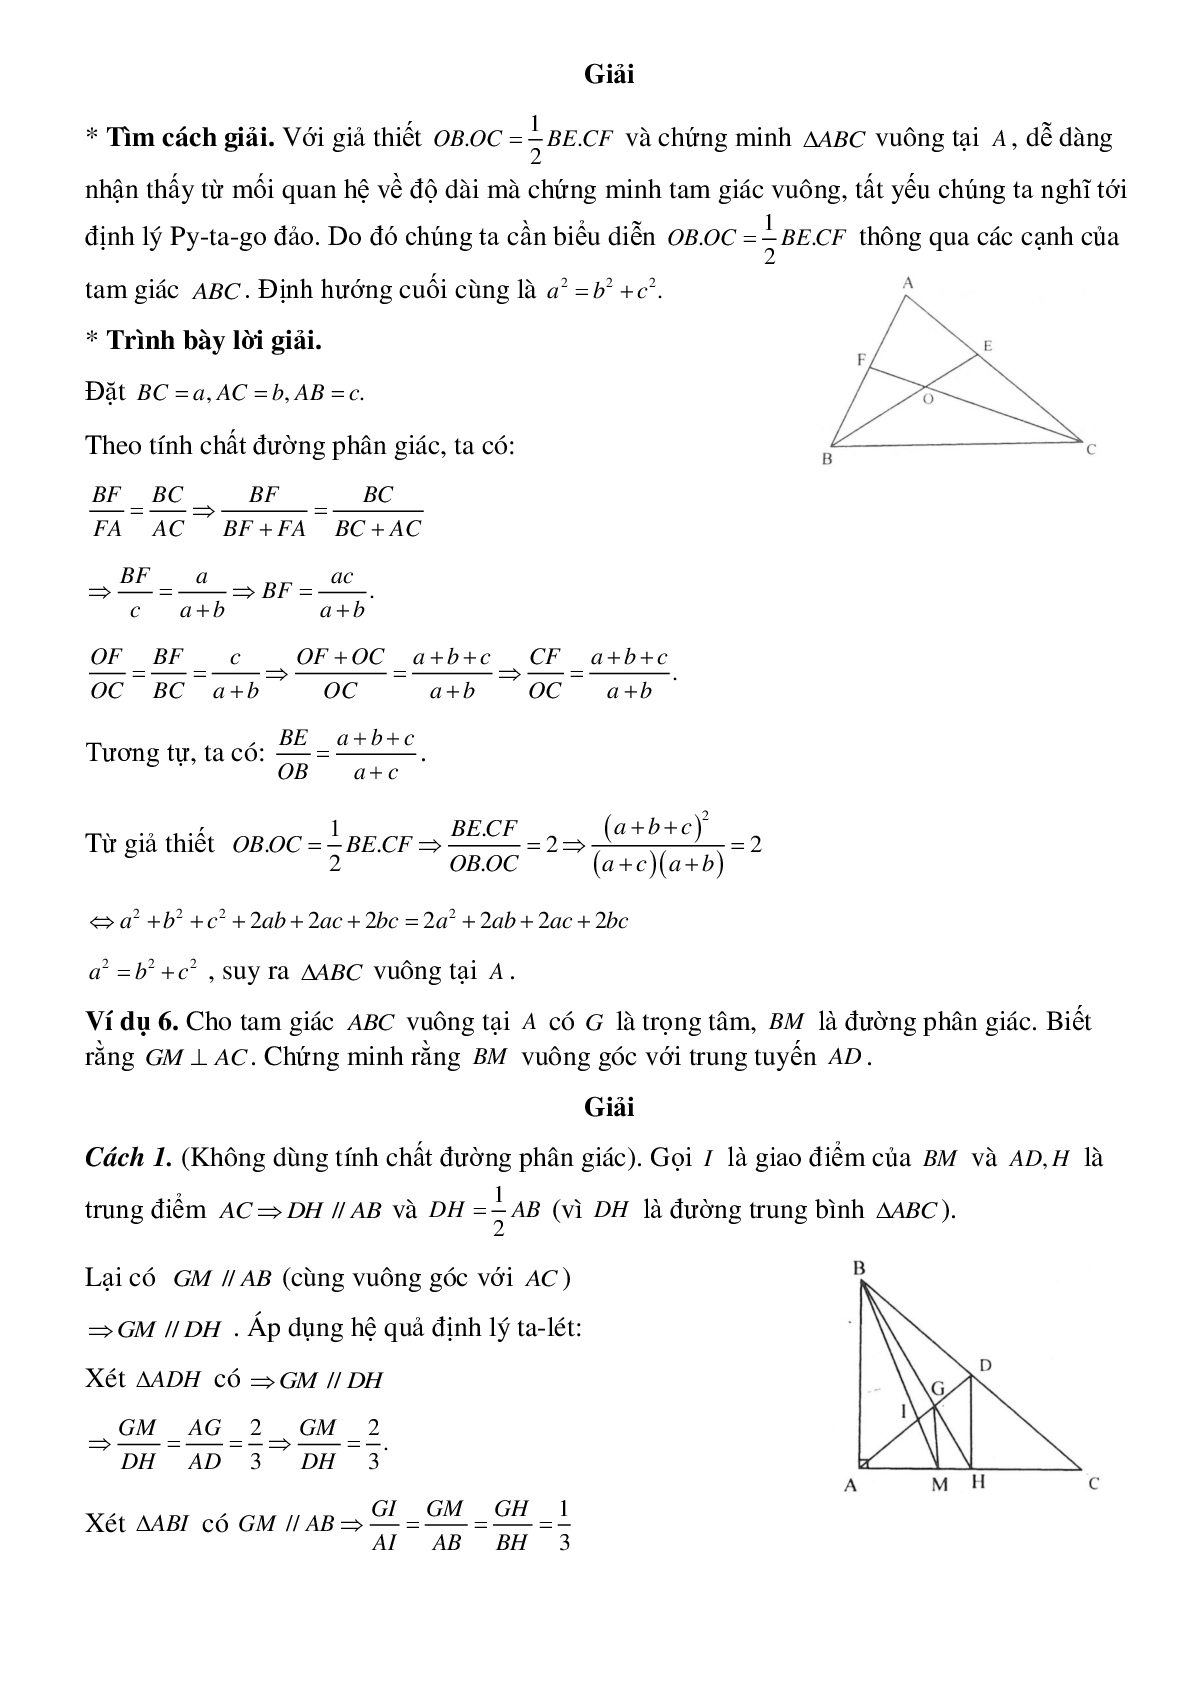 Tính chất đường phân giác của tam giác (trang 5)